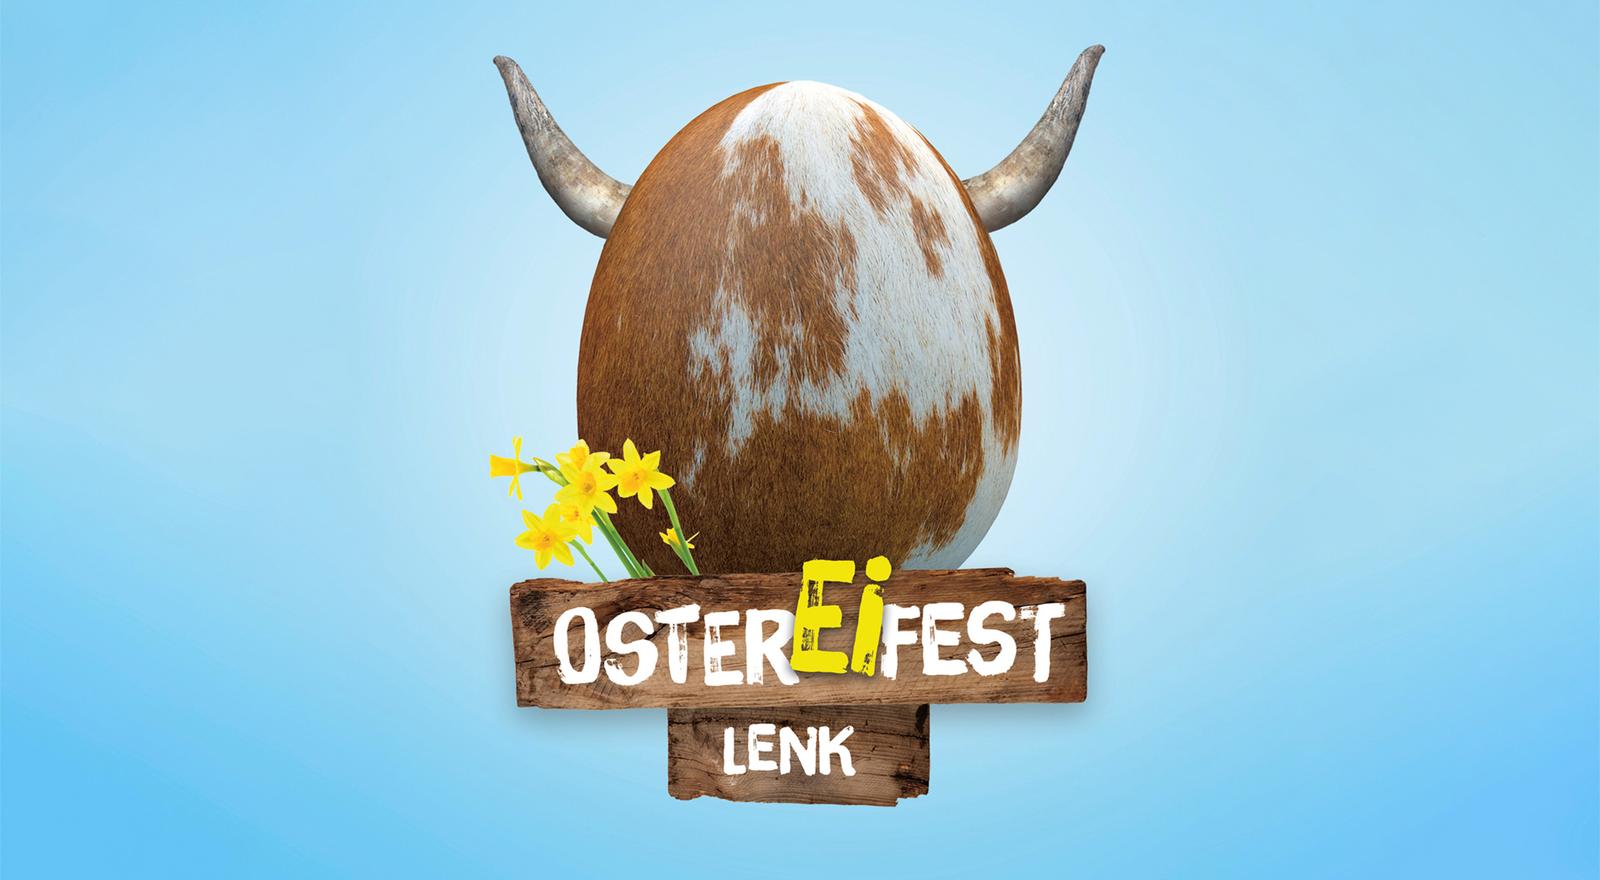 OsterEiFest